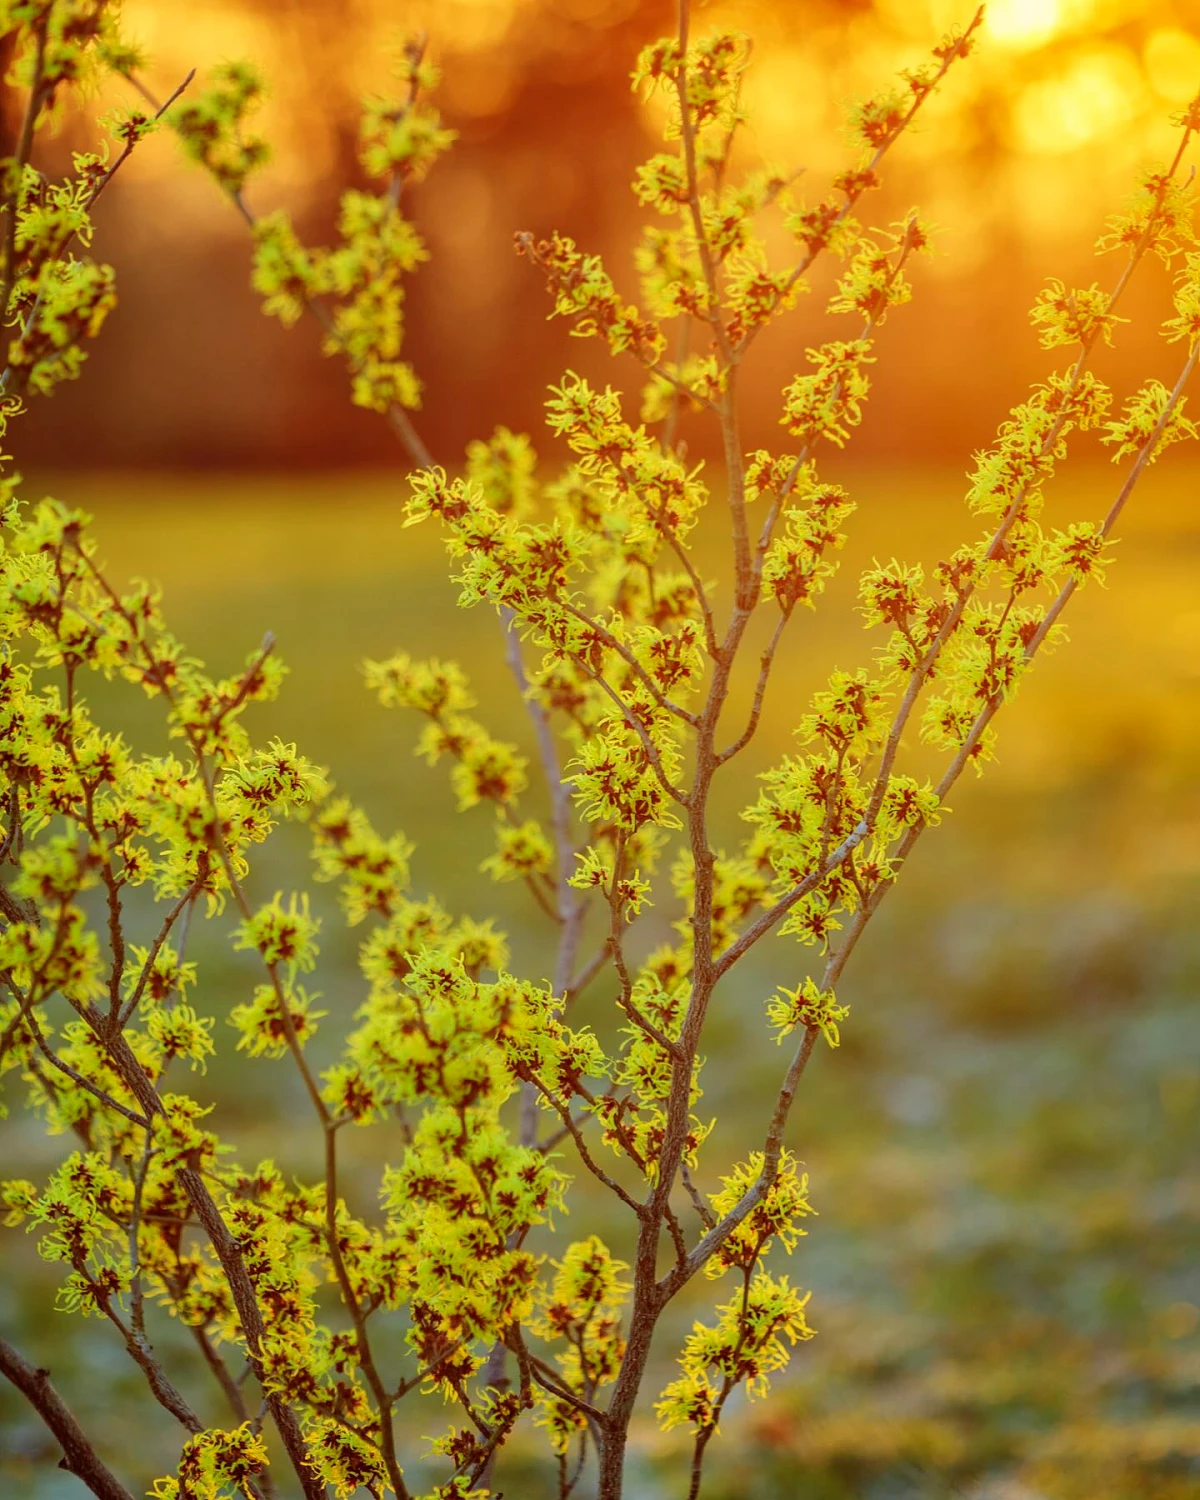 hamamelis fleurs jaunes au coucher du soleil